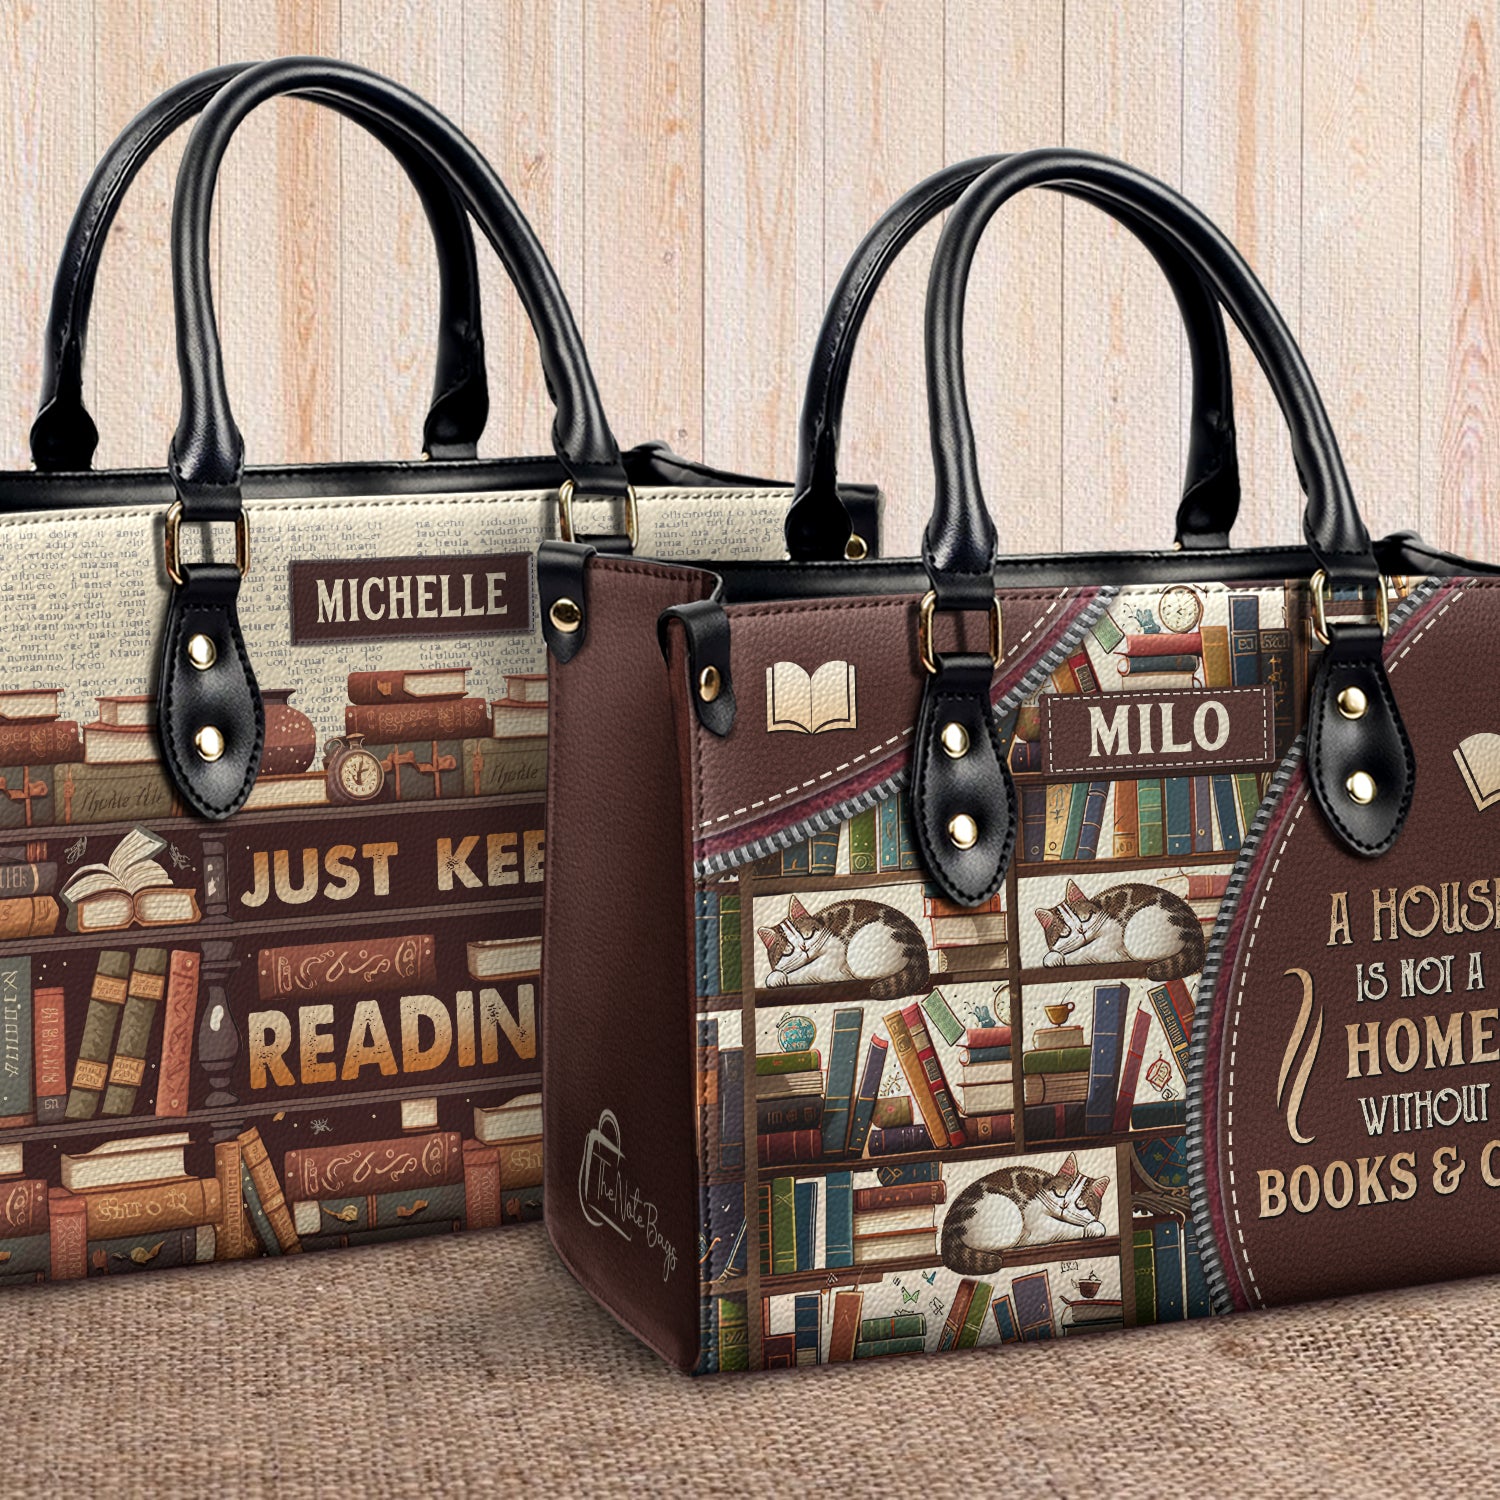 School Bag Books Inside On White Stock Photo 153333644 | Shutterstock